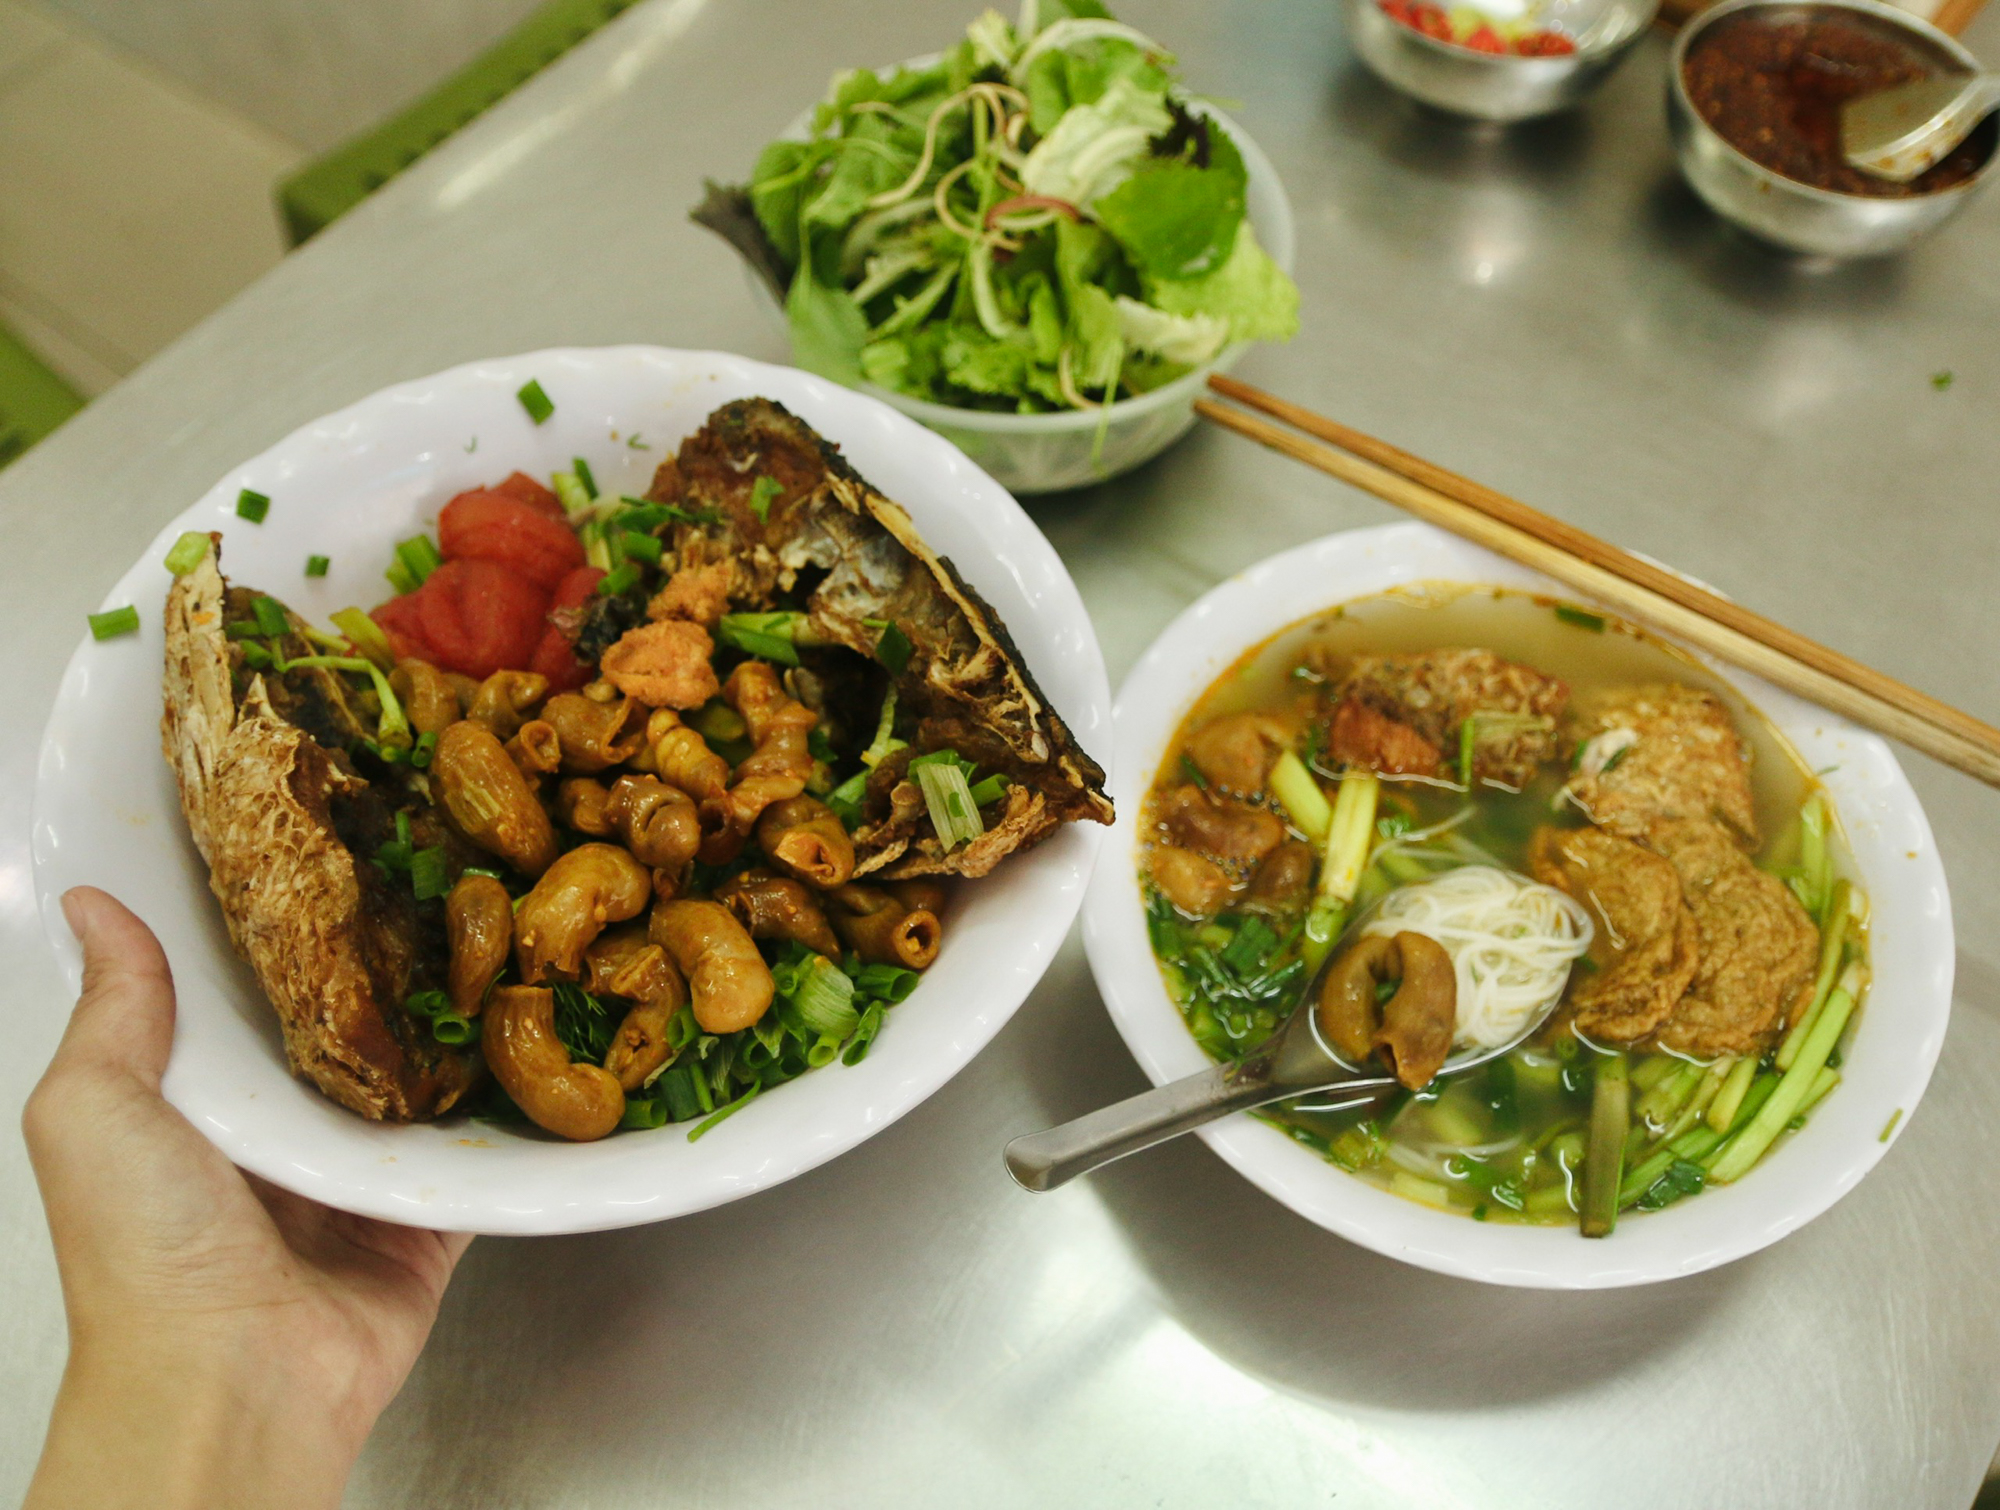 Quán bún đầu cá hiếm hoi ở Hà Nội, siêu đông khách nhờ tận dụng thứ bỏ đi - Ảnh 8.